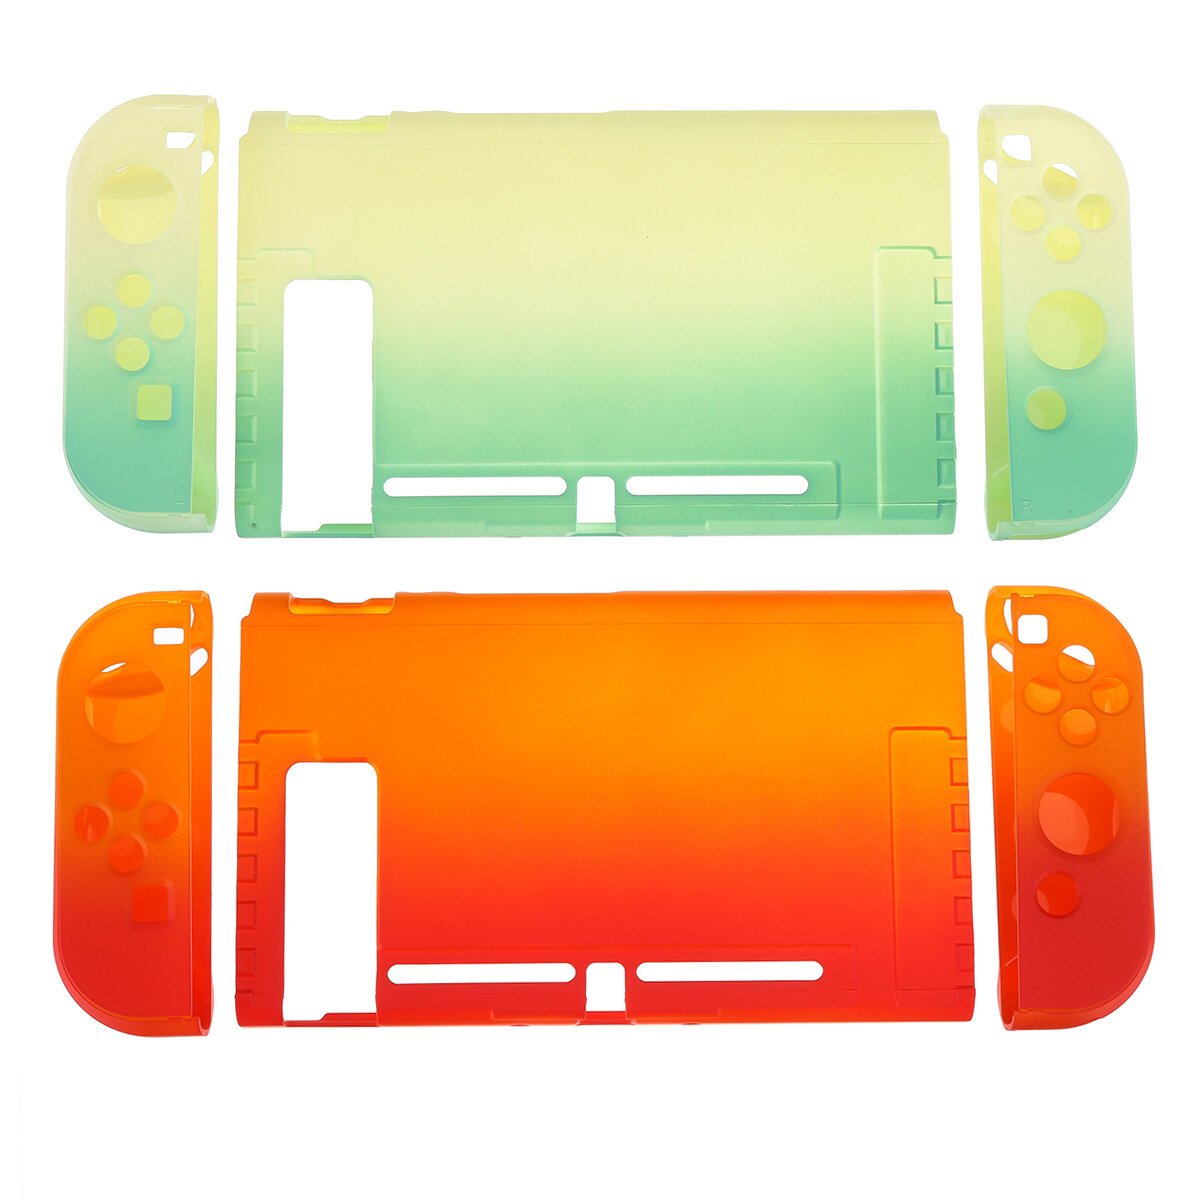 Kleurrijke schokbestendige shell-gradi?ntbehuizing voor Nintendo Switch gameconsole beschermende har